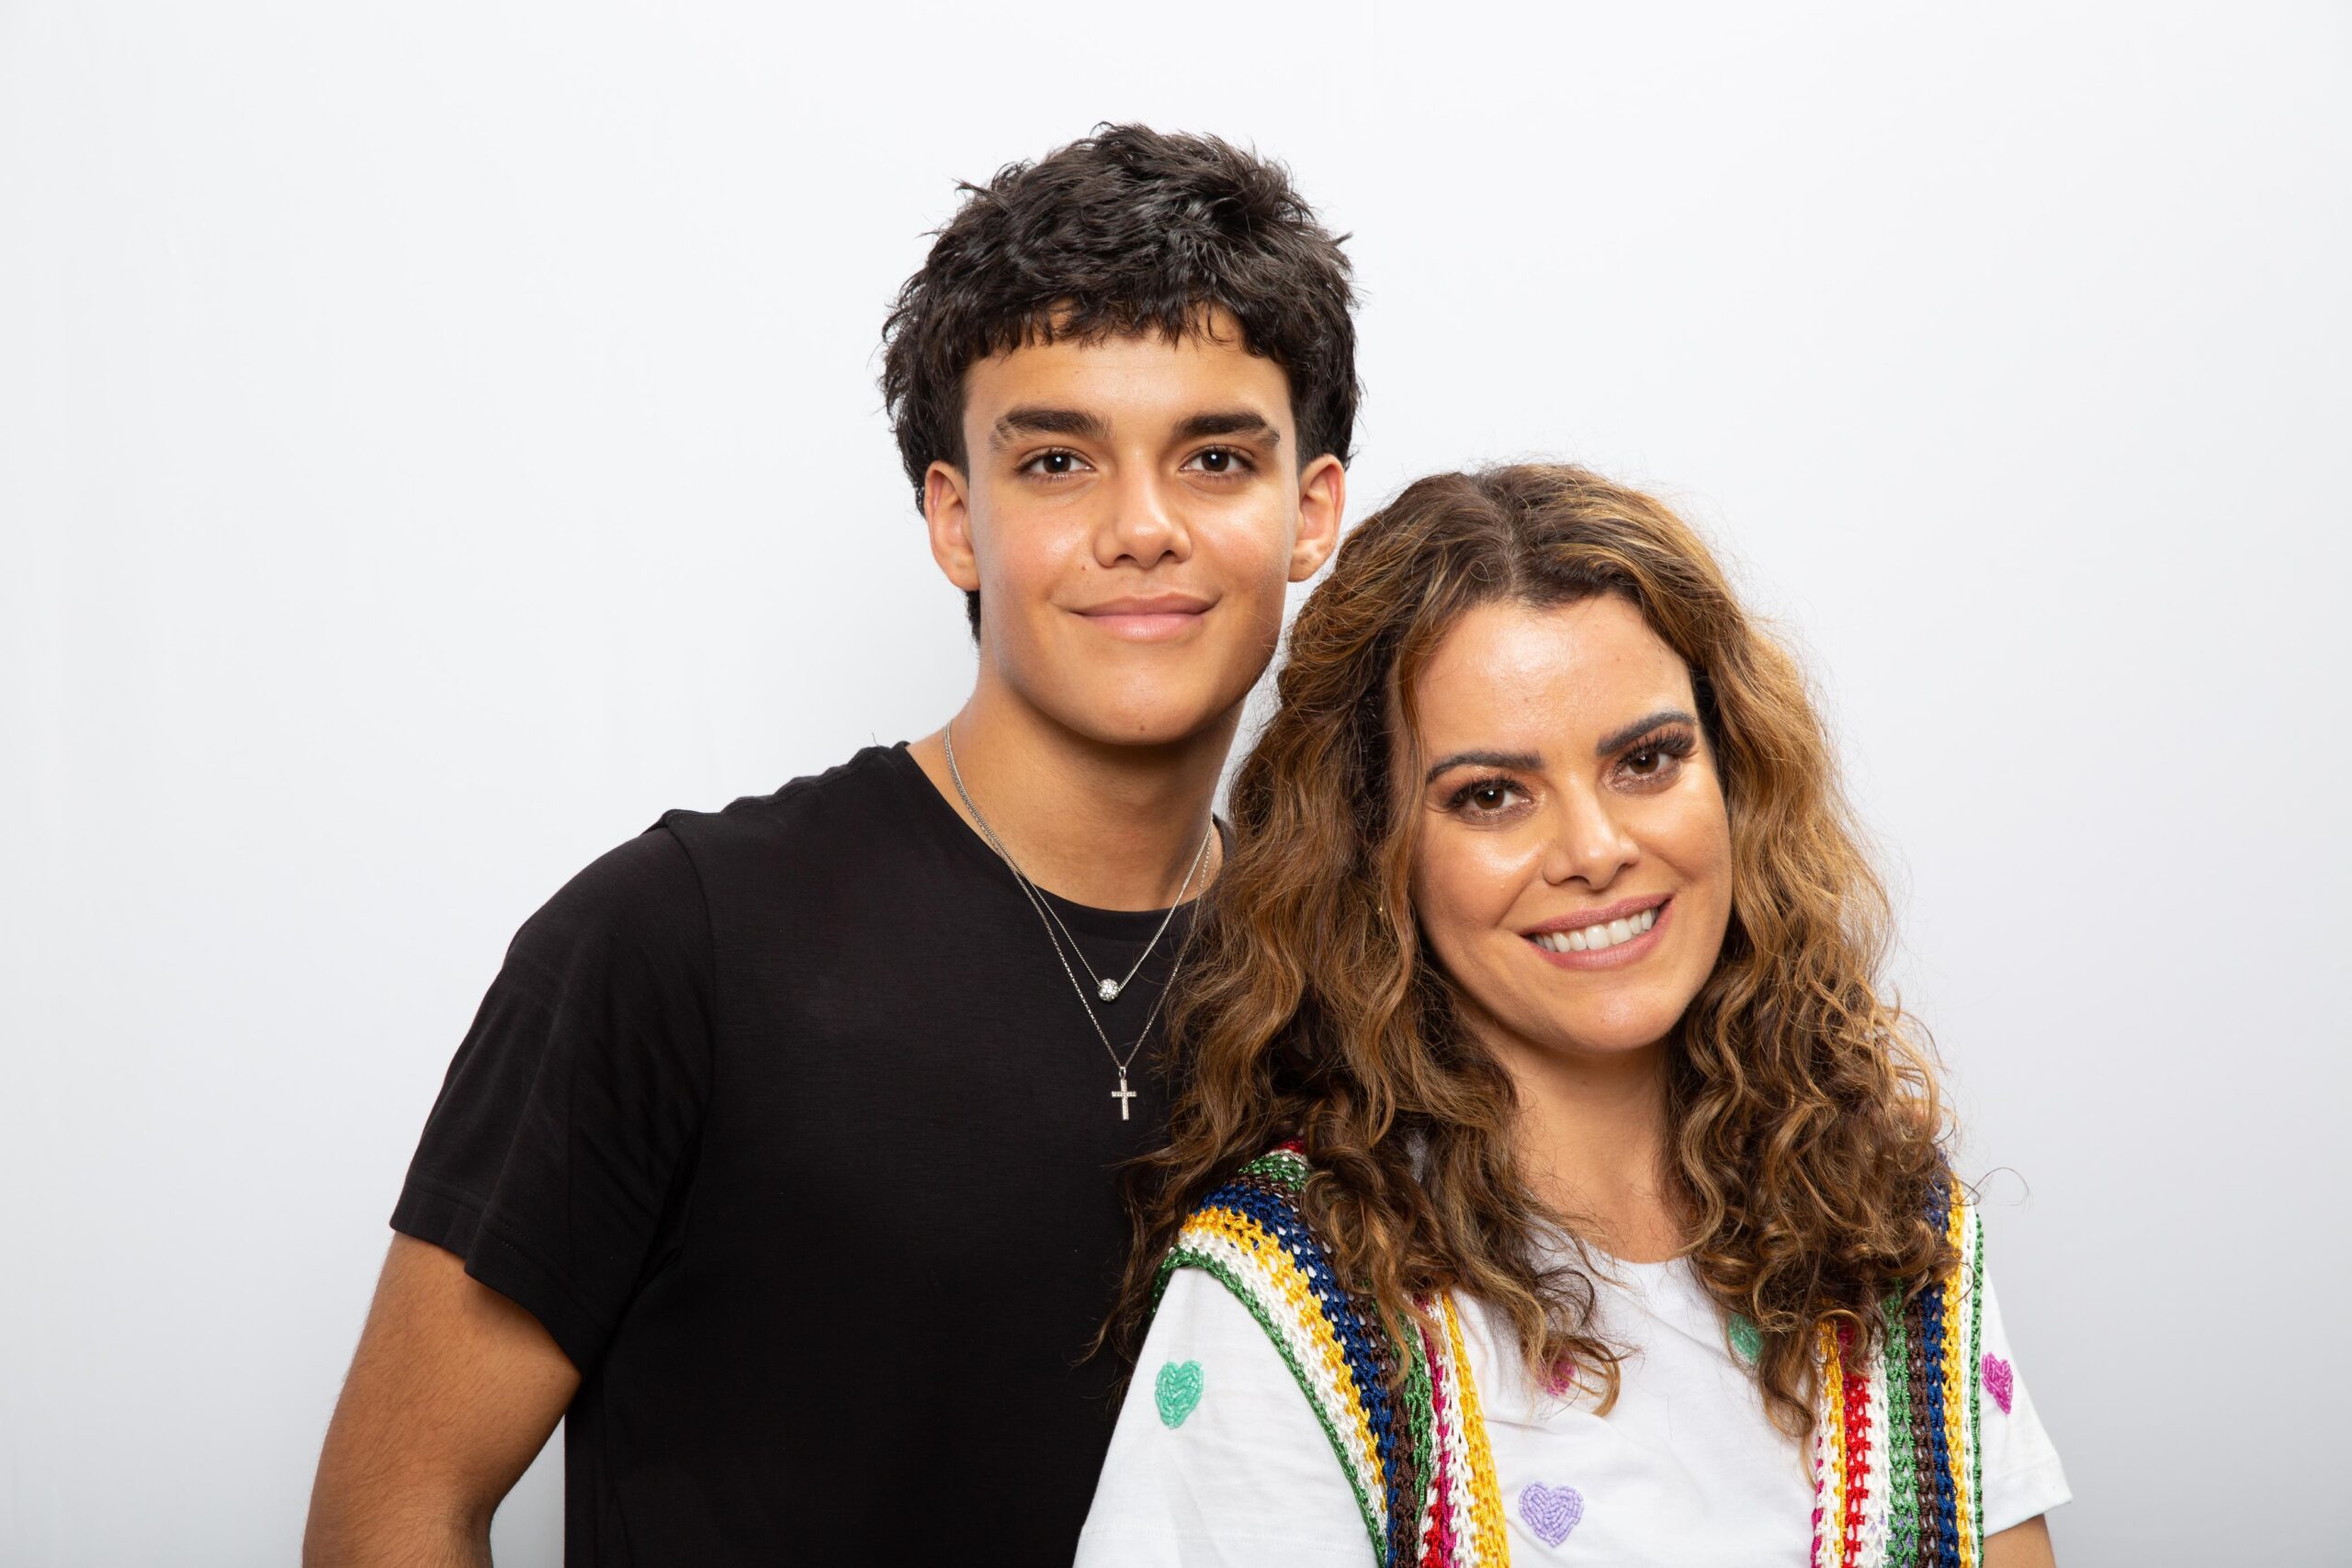 Seguindo os passos da mãe, Isaque Valadão Bessa é a nova aposta no gospel como artista da geração Z